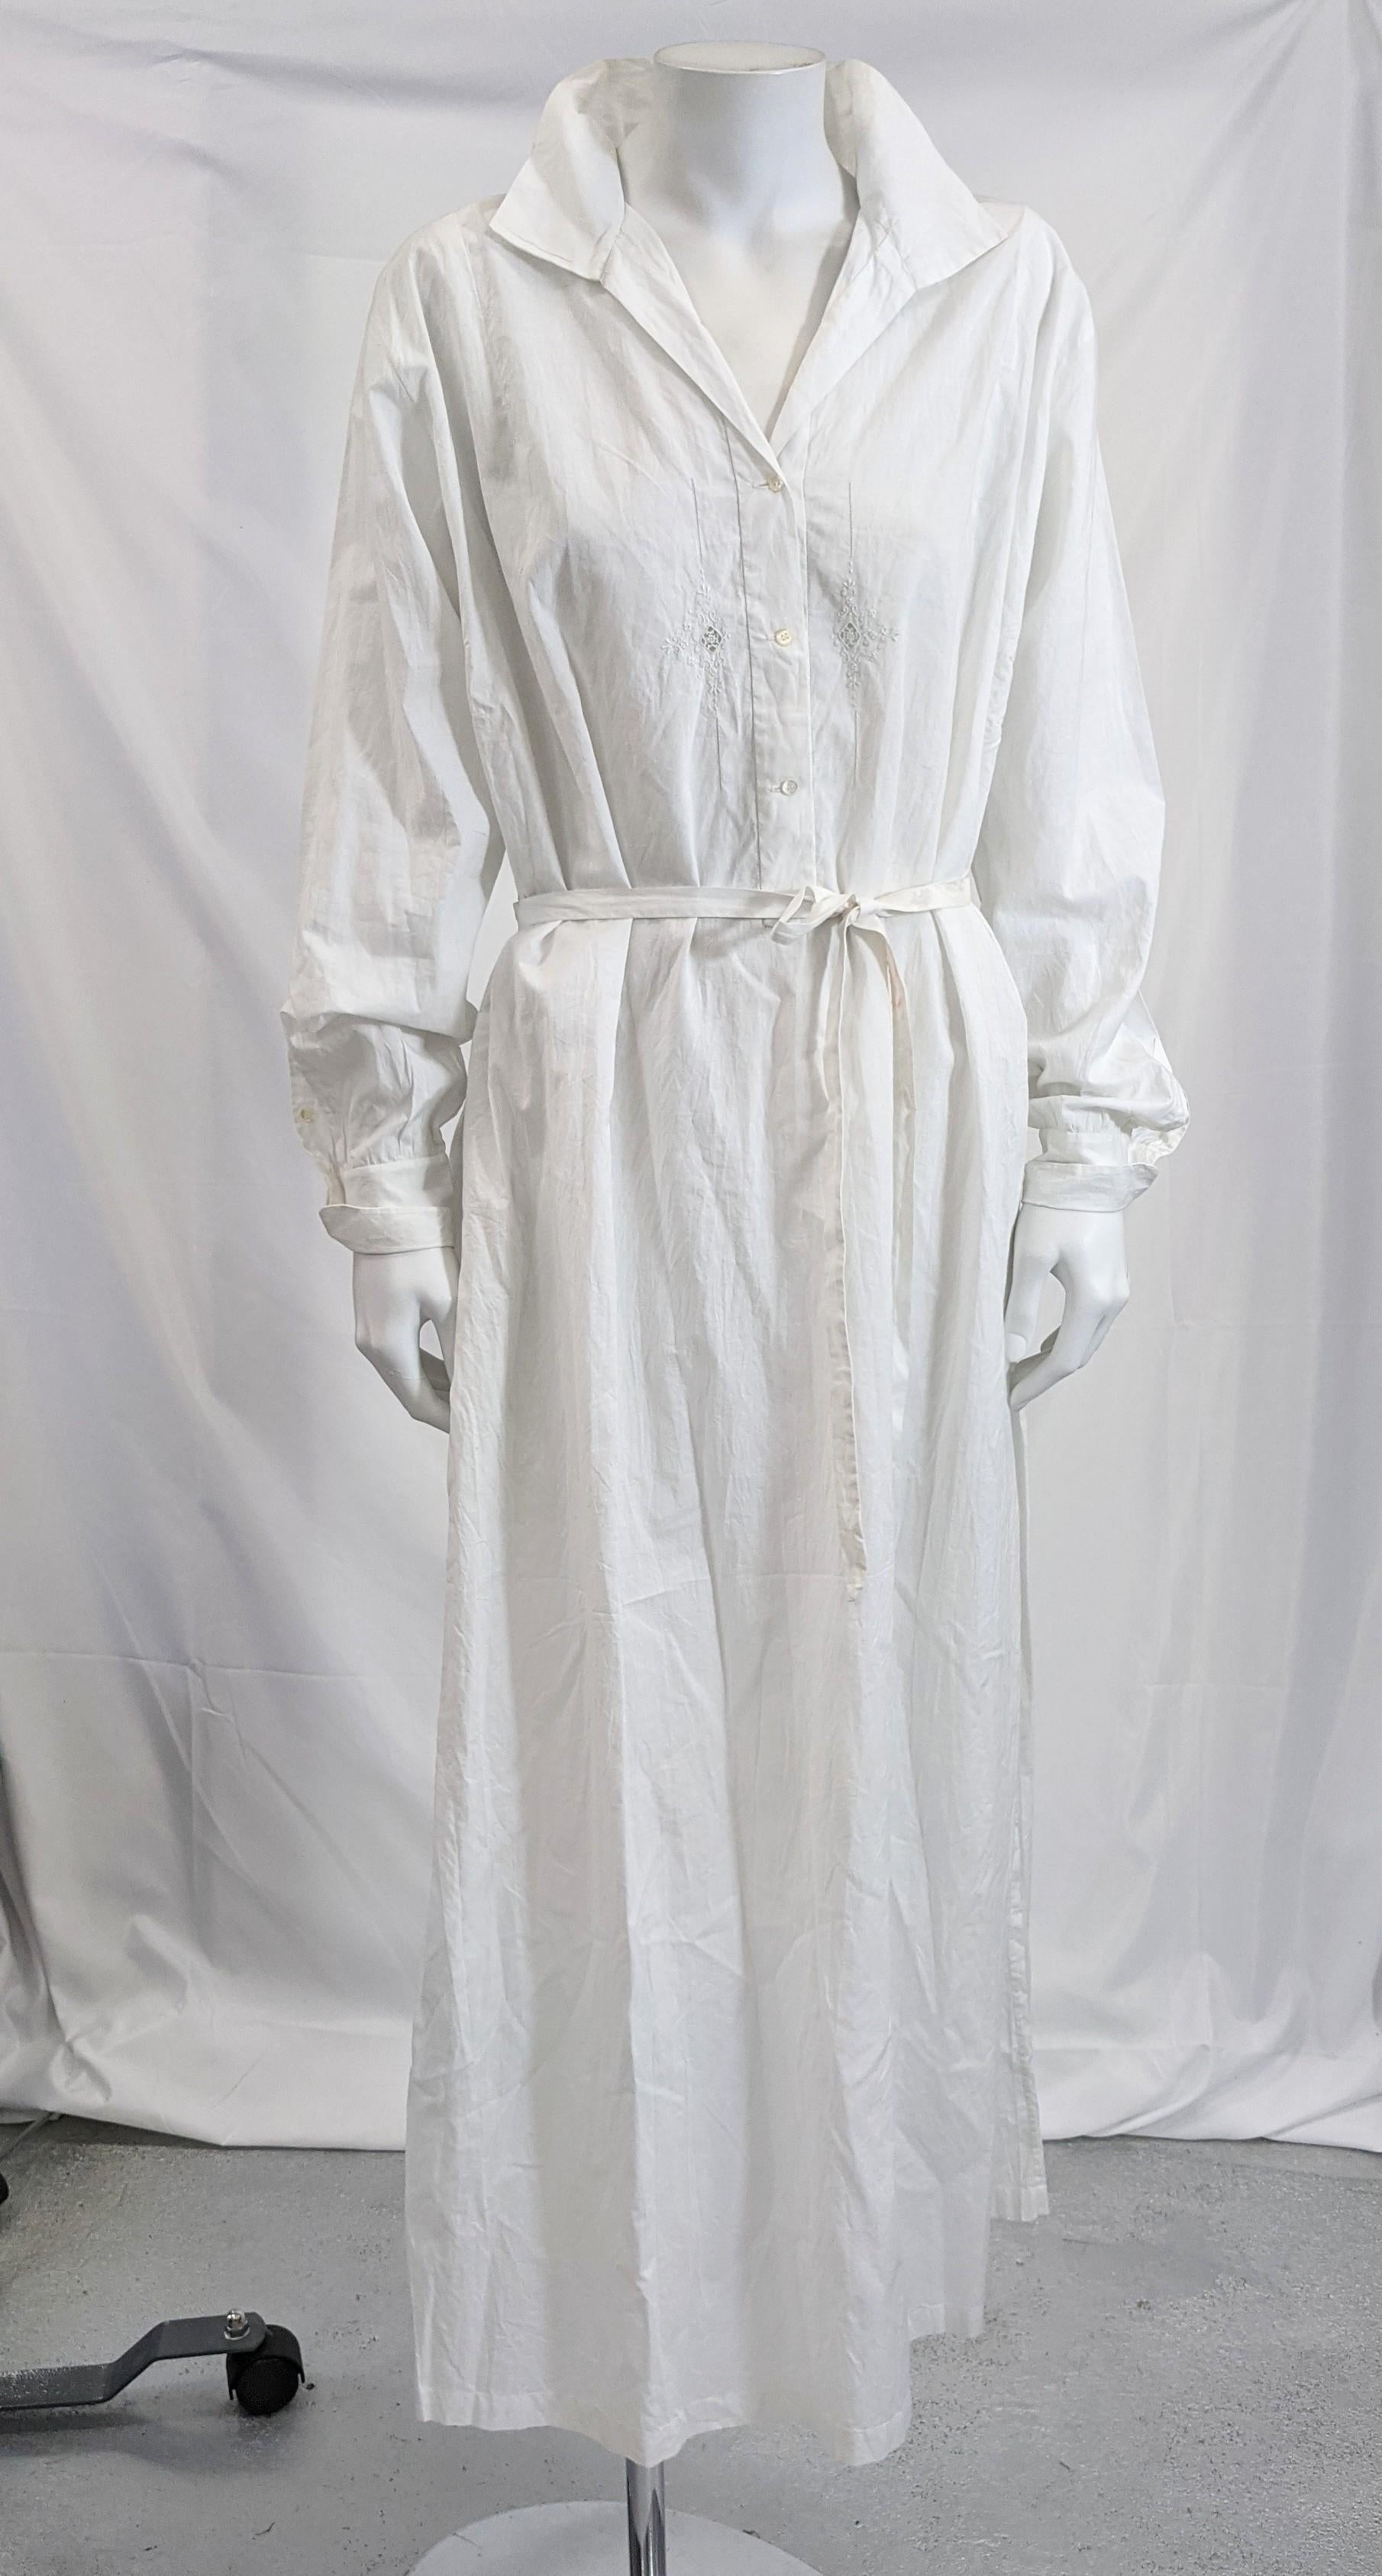 Elegantes Kleid aus französischem Baumwollbatist, das auch als Tageskleid getragen werden kann. Halbtransparenter Baumwollbatist mit schönen durchbrochenen Mustern auf beiden Seiten der Knopfleiste. Große umgekehrte Falten an jeder Seitennaht der